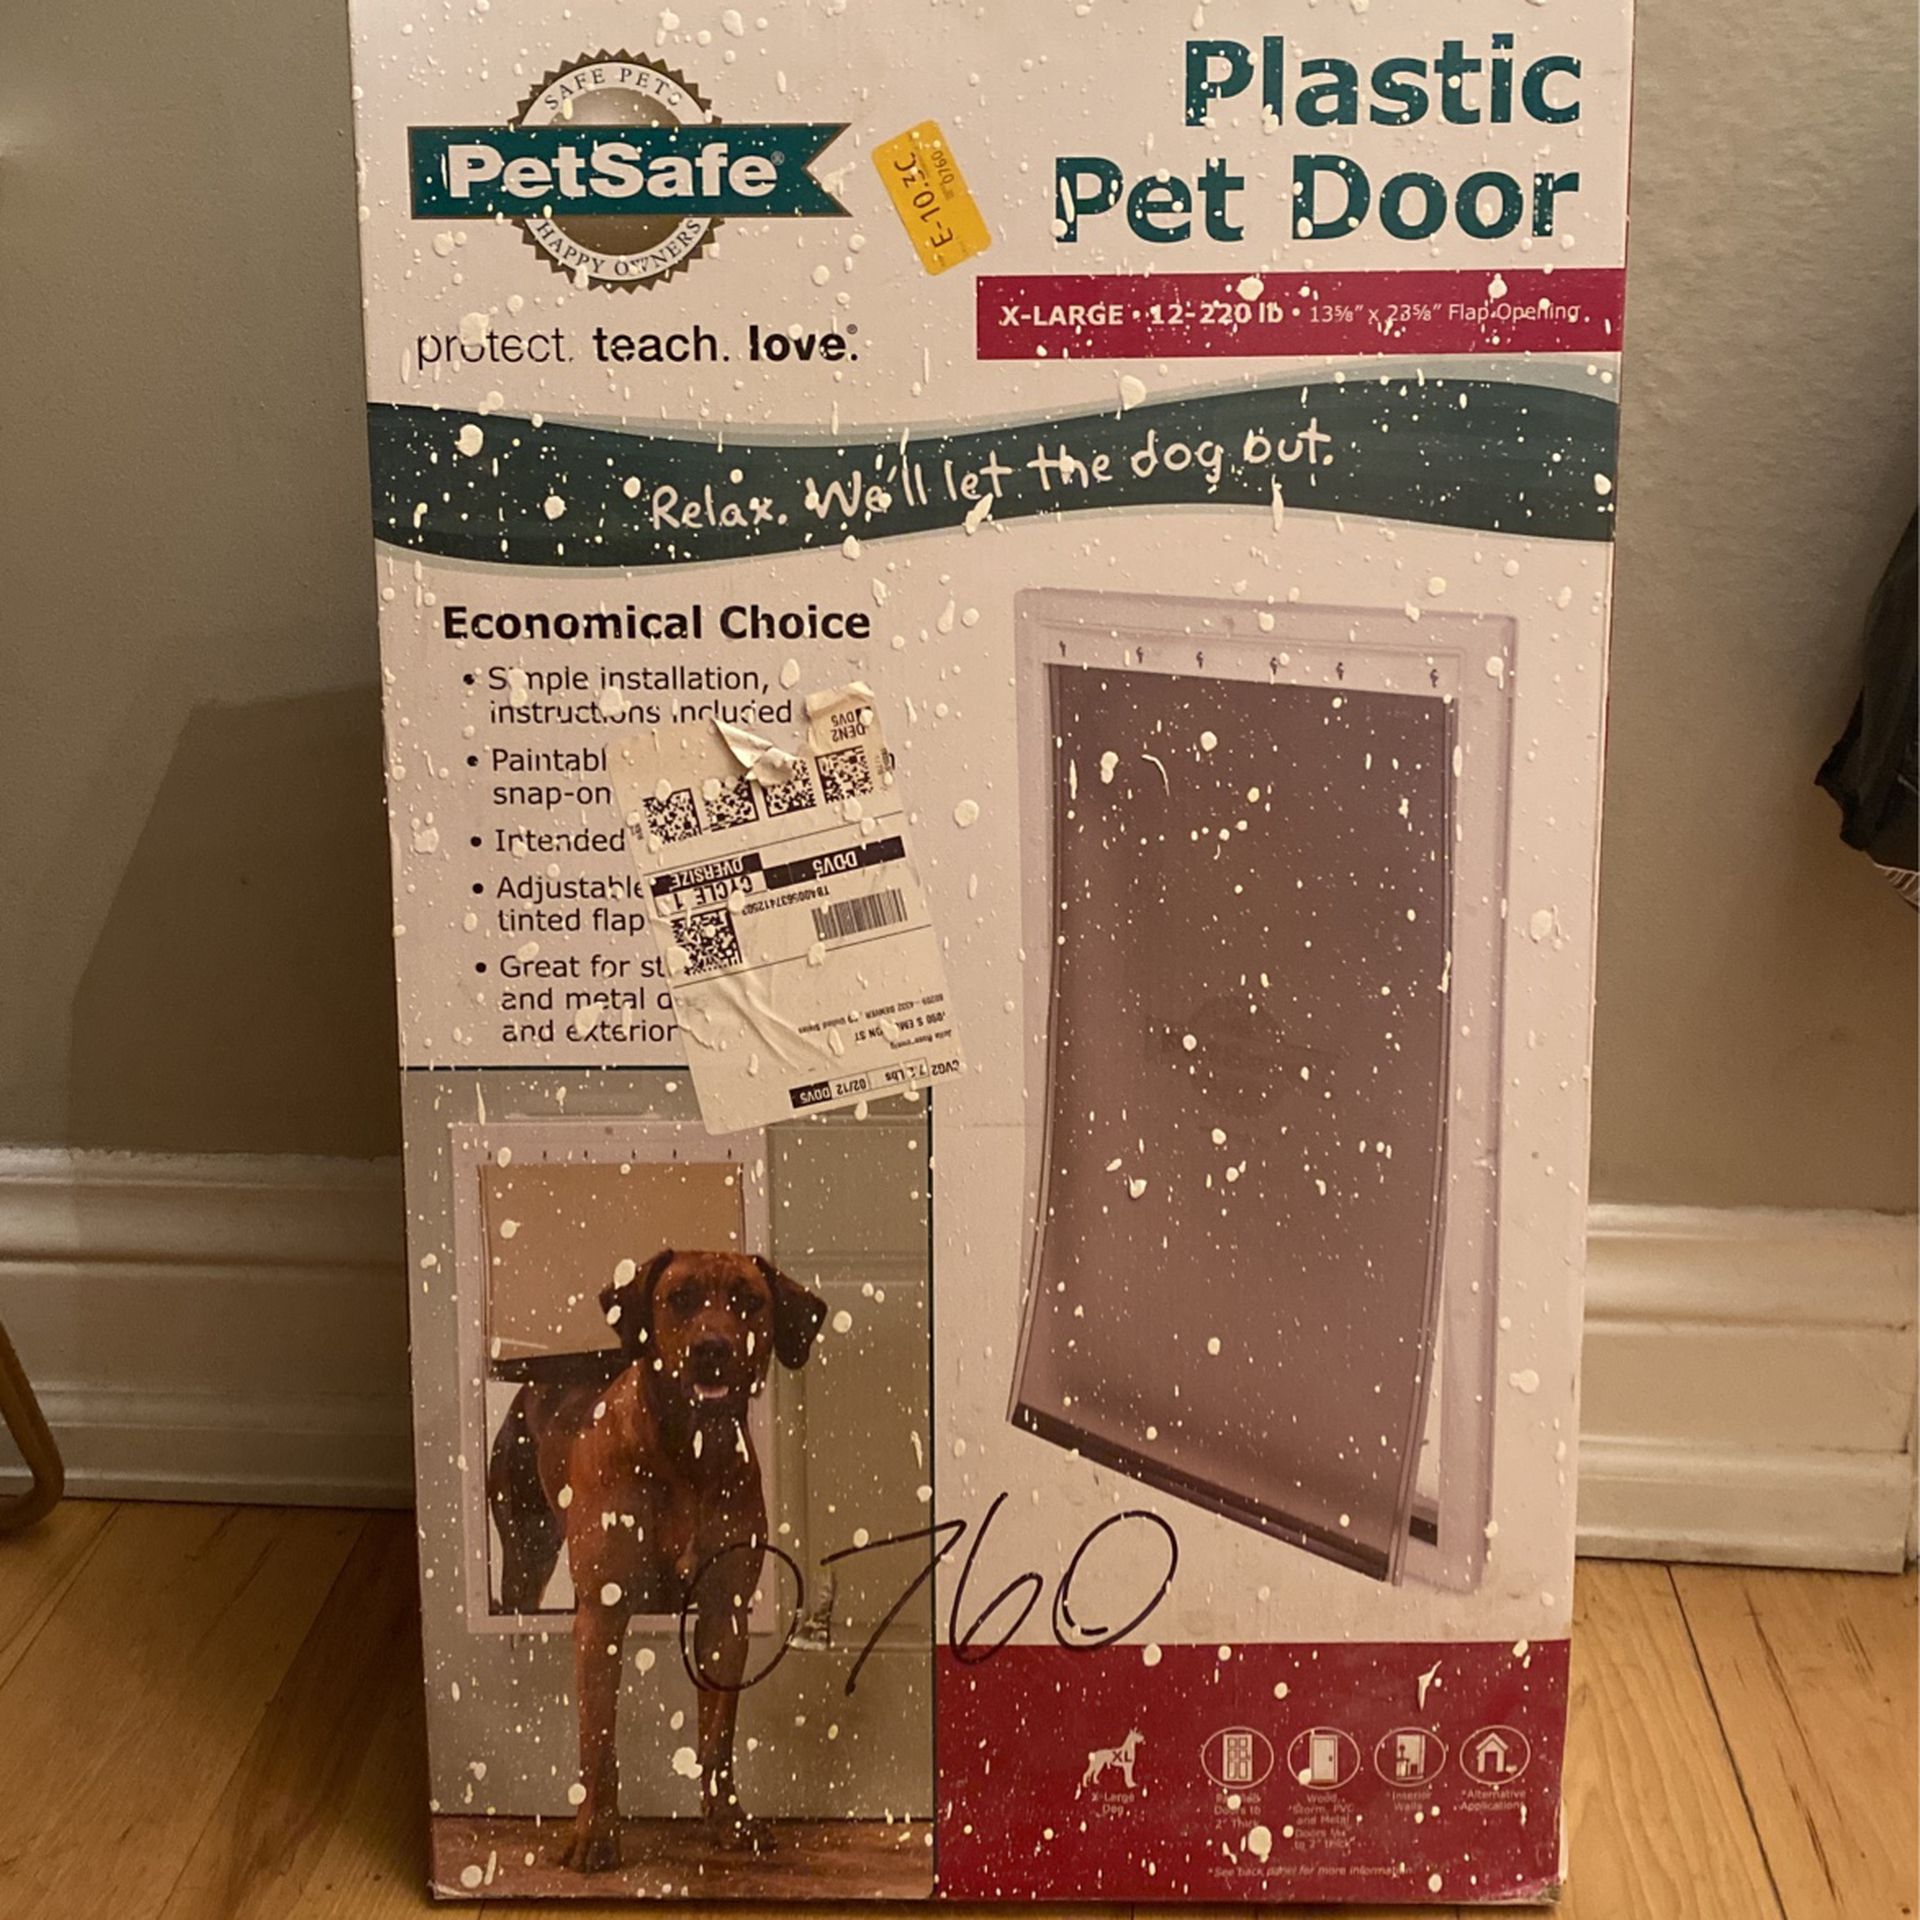 PetSafe Plastic pet Door